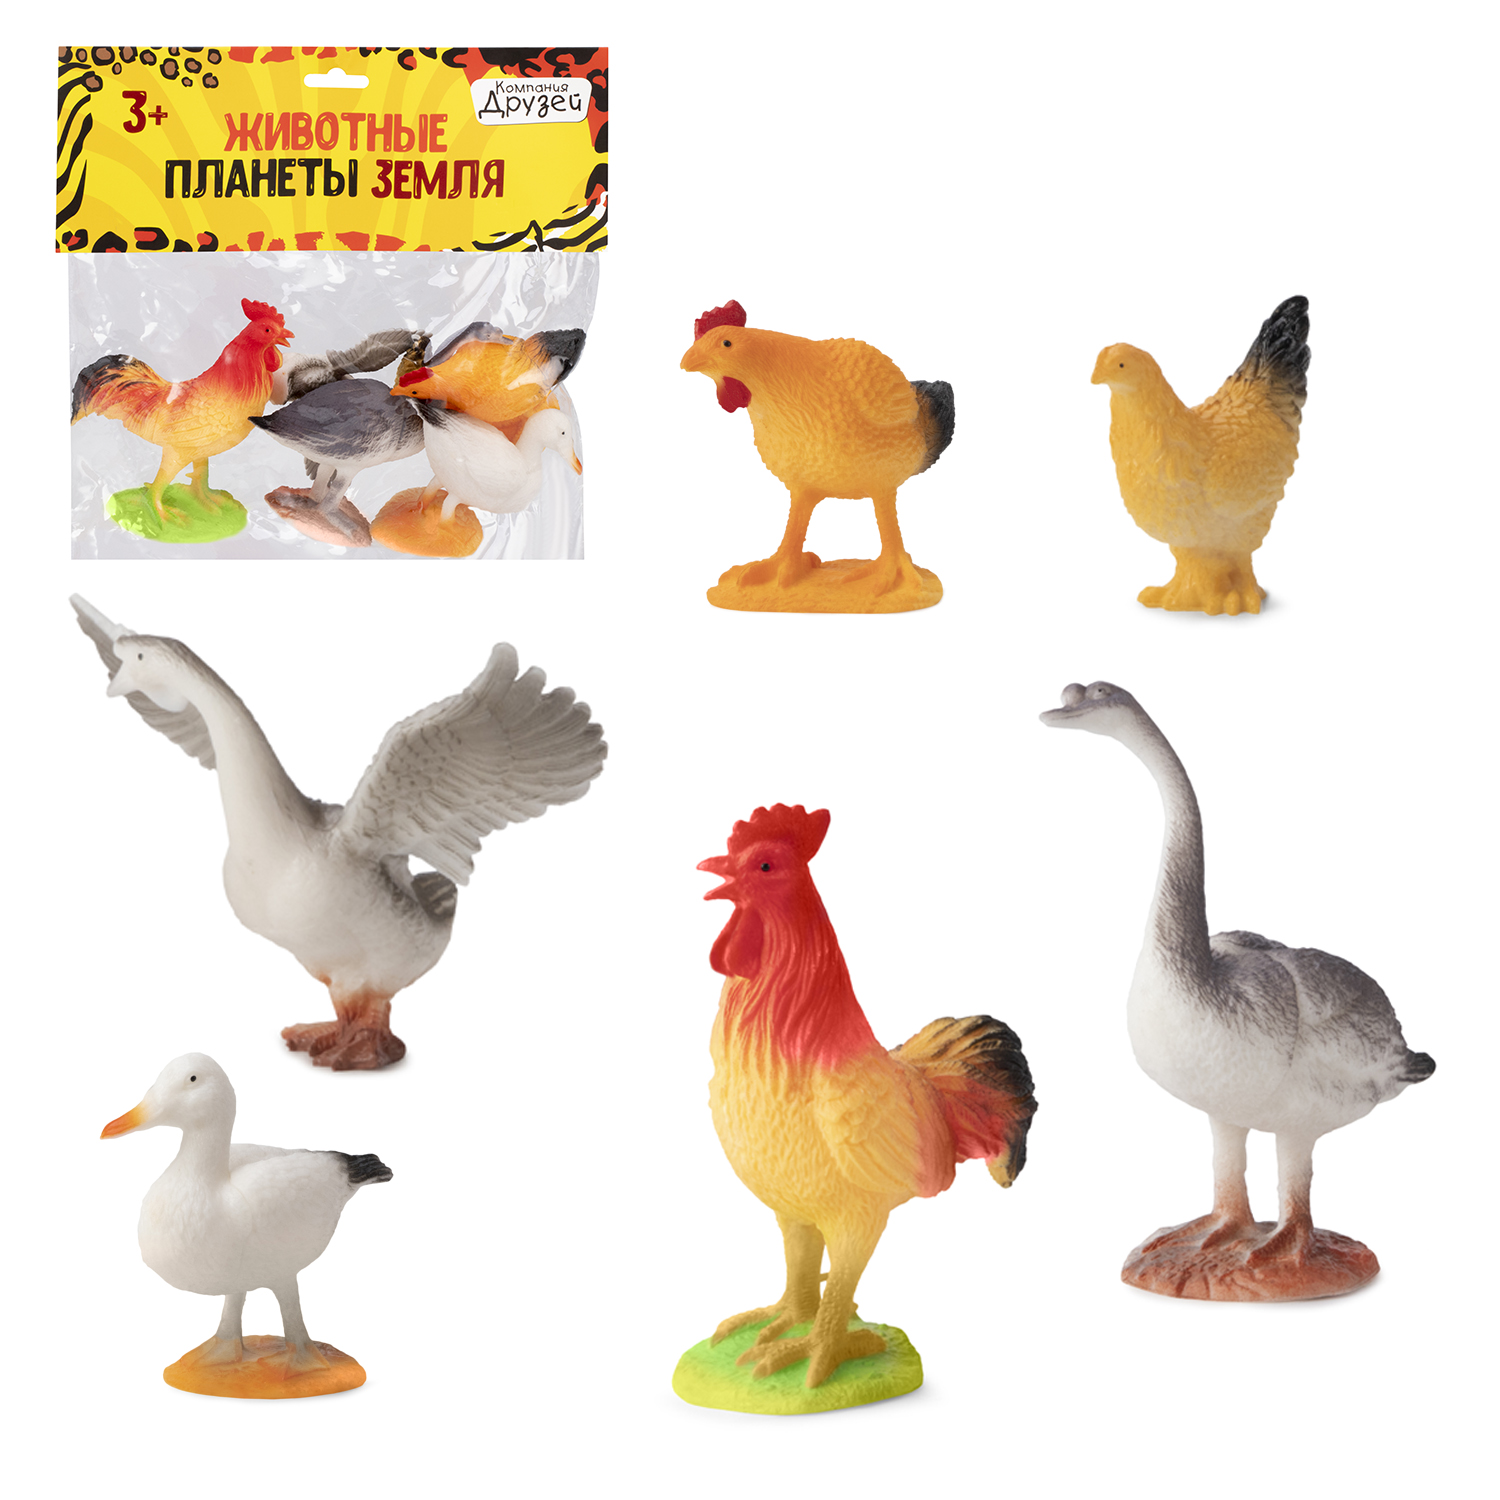 Игровой набор Компания друзей Домашние птицы Животные планеты Земля, 6 фигурок, JB0207201